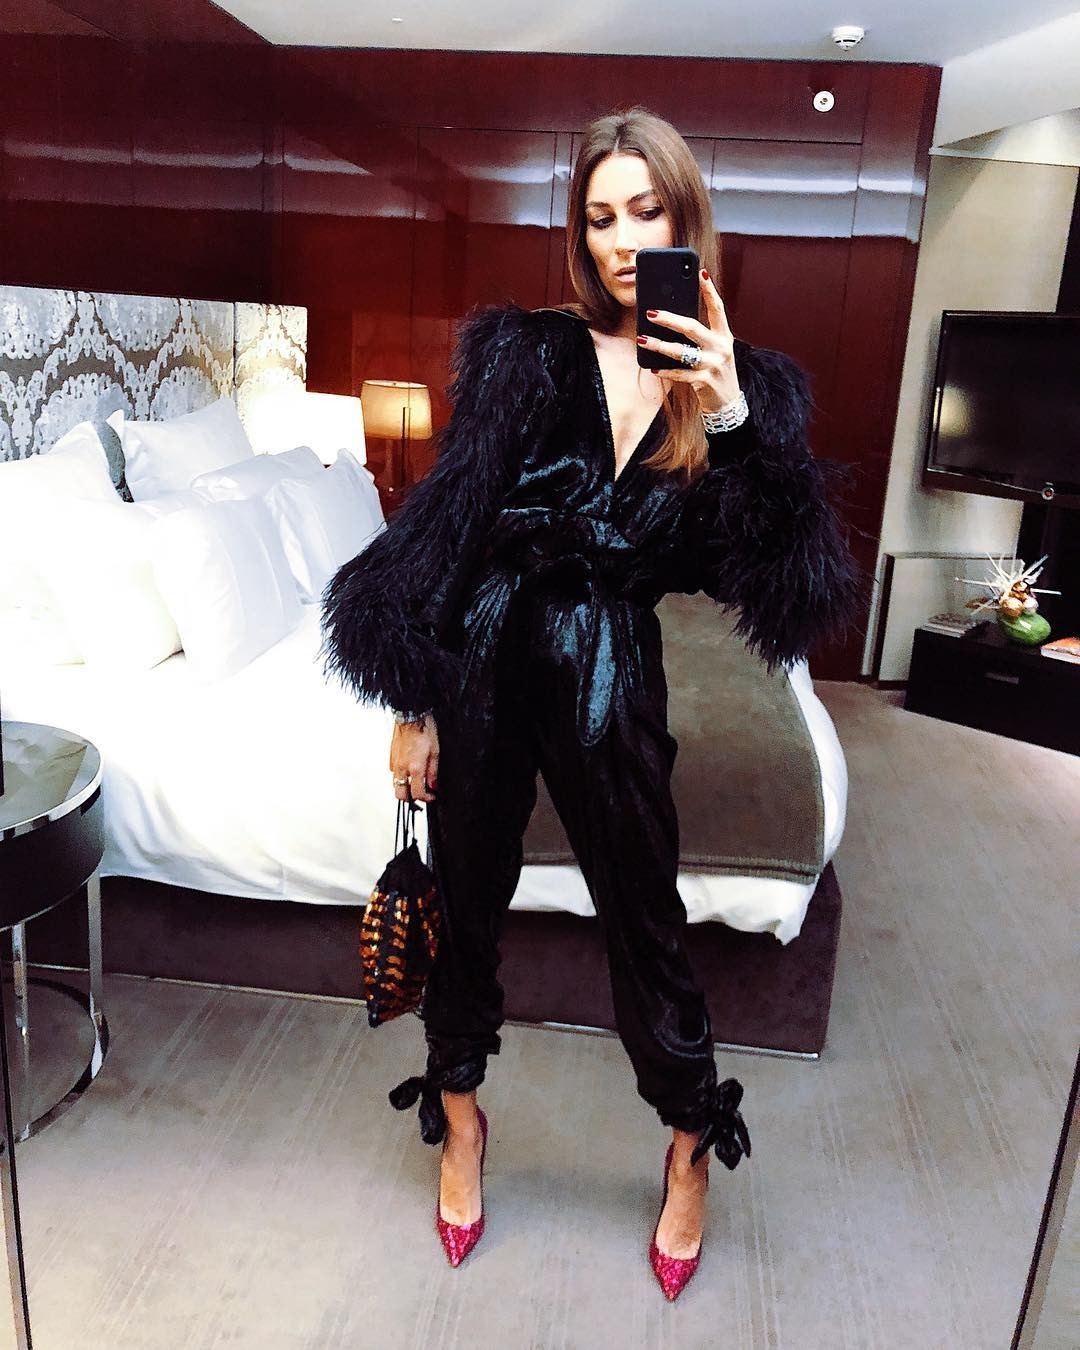 Kylie Jenner'dan Lena Perminova'ya Yılın Işıltılı Moda Instagramları